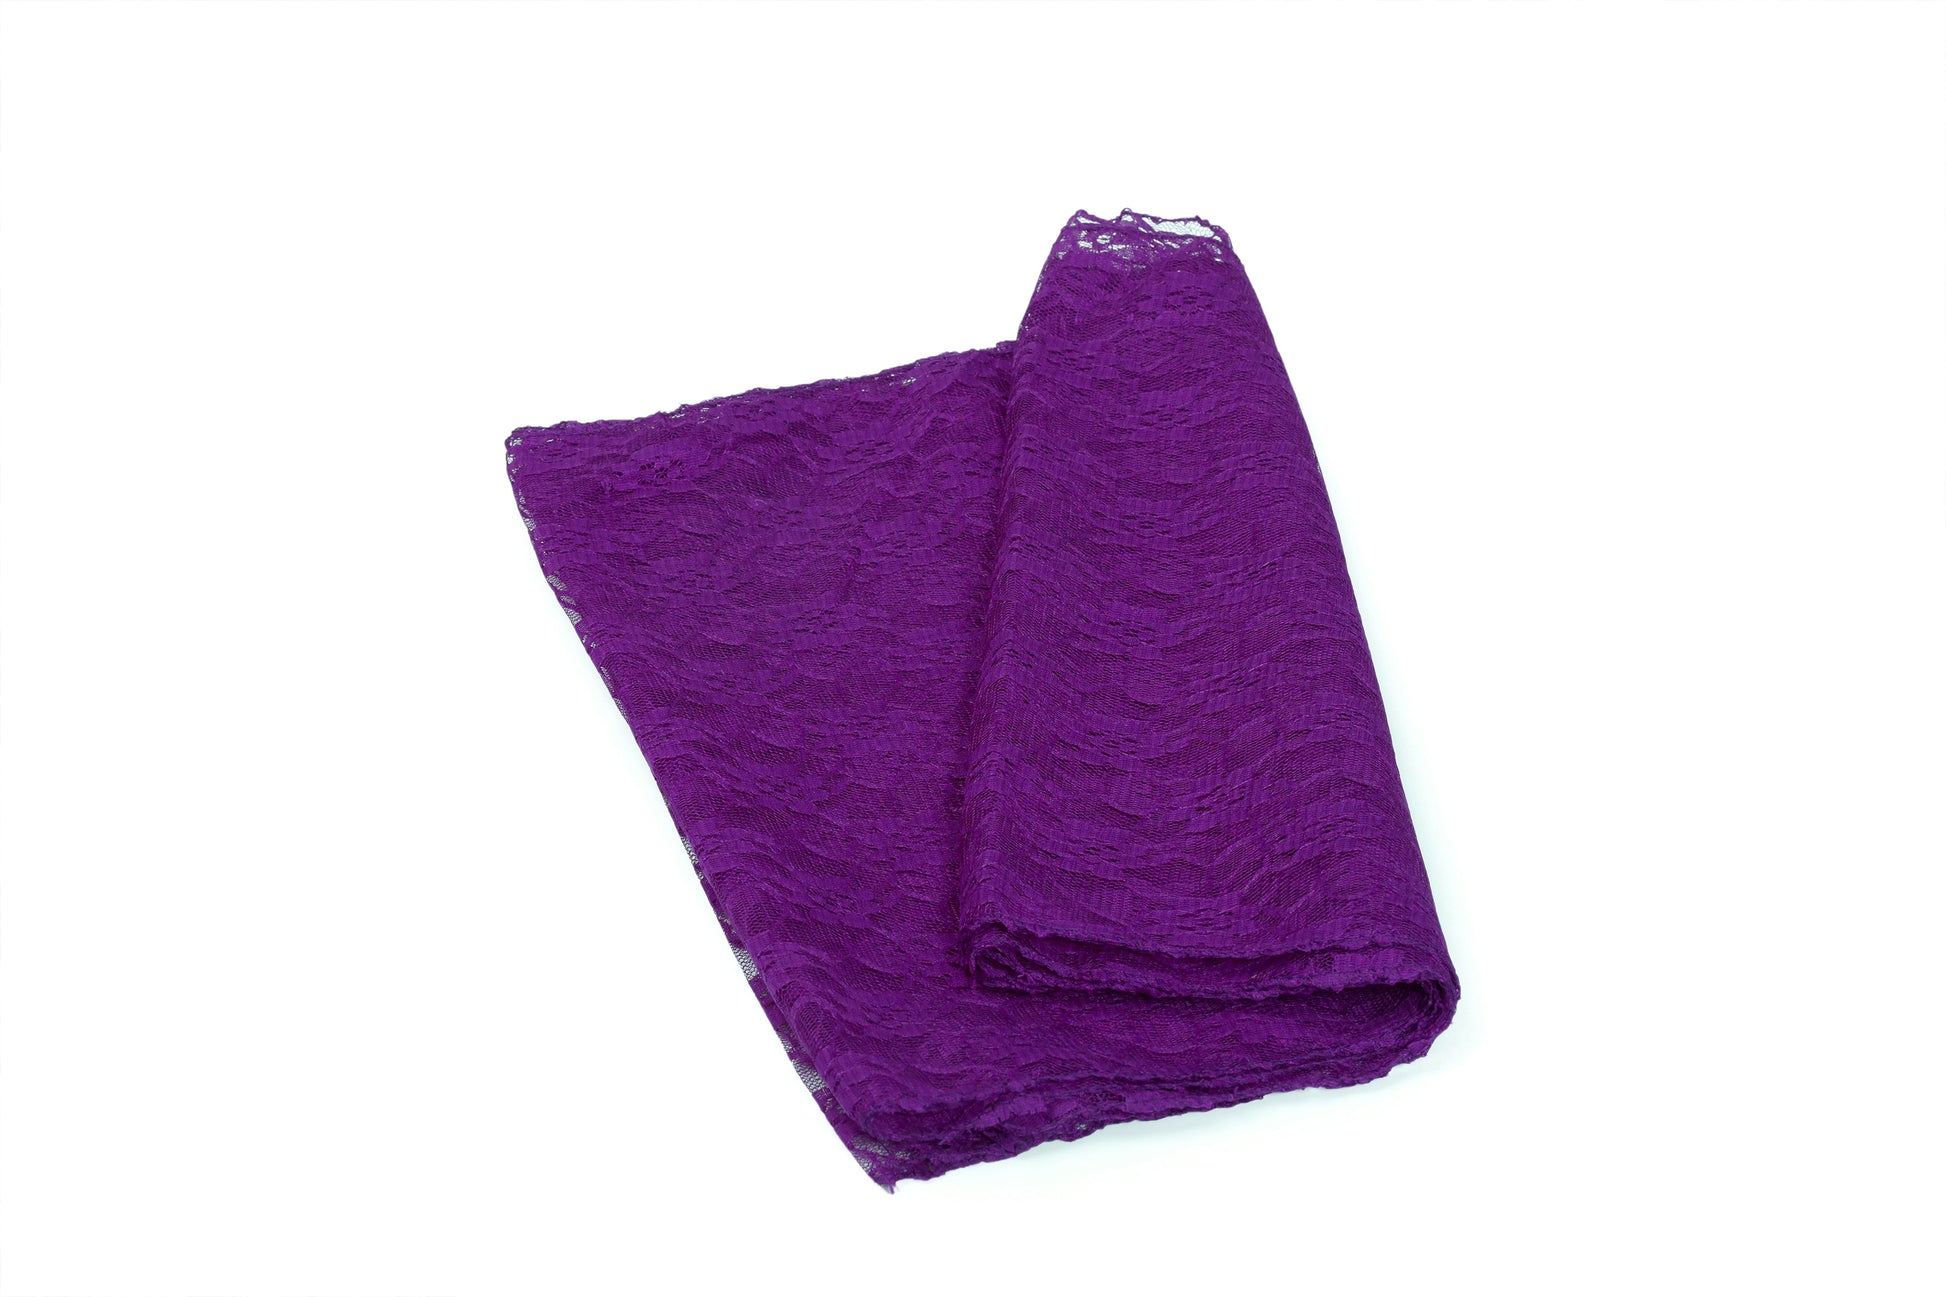 Cadbury Purple,7312d590-c5d2-49e0-9fd1-5c0c7c0dbdf3